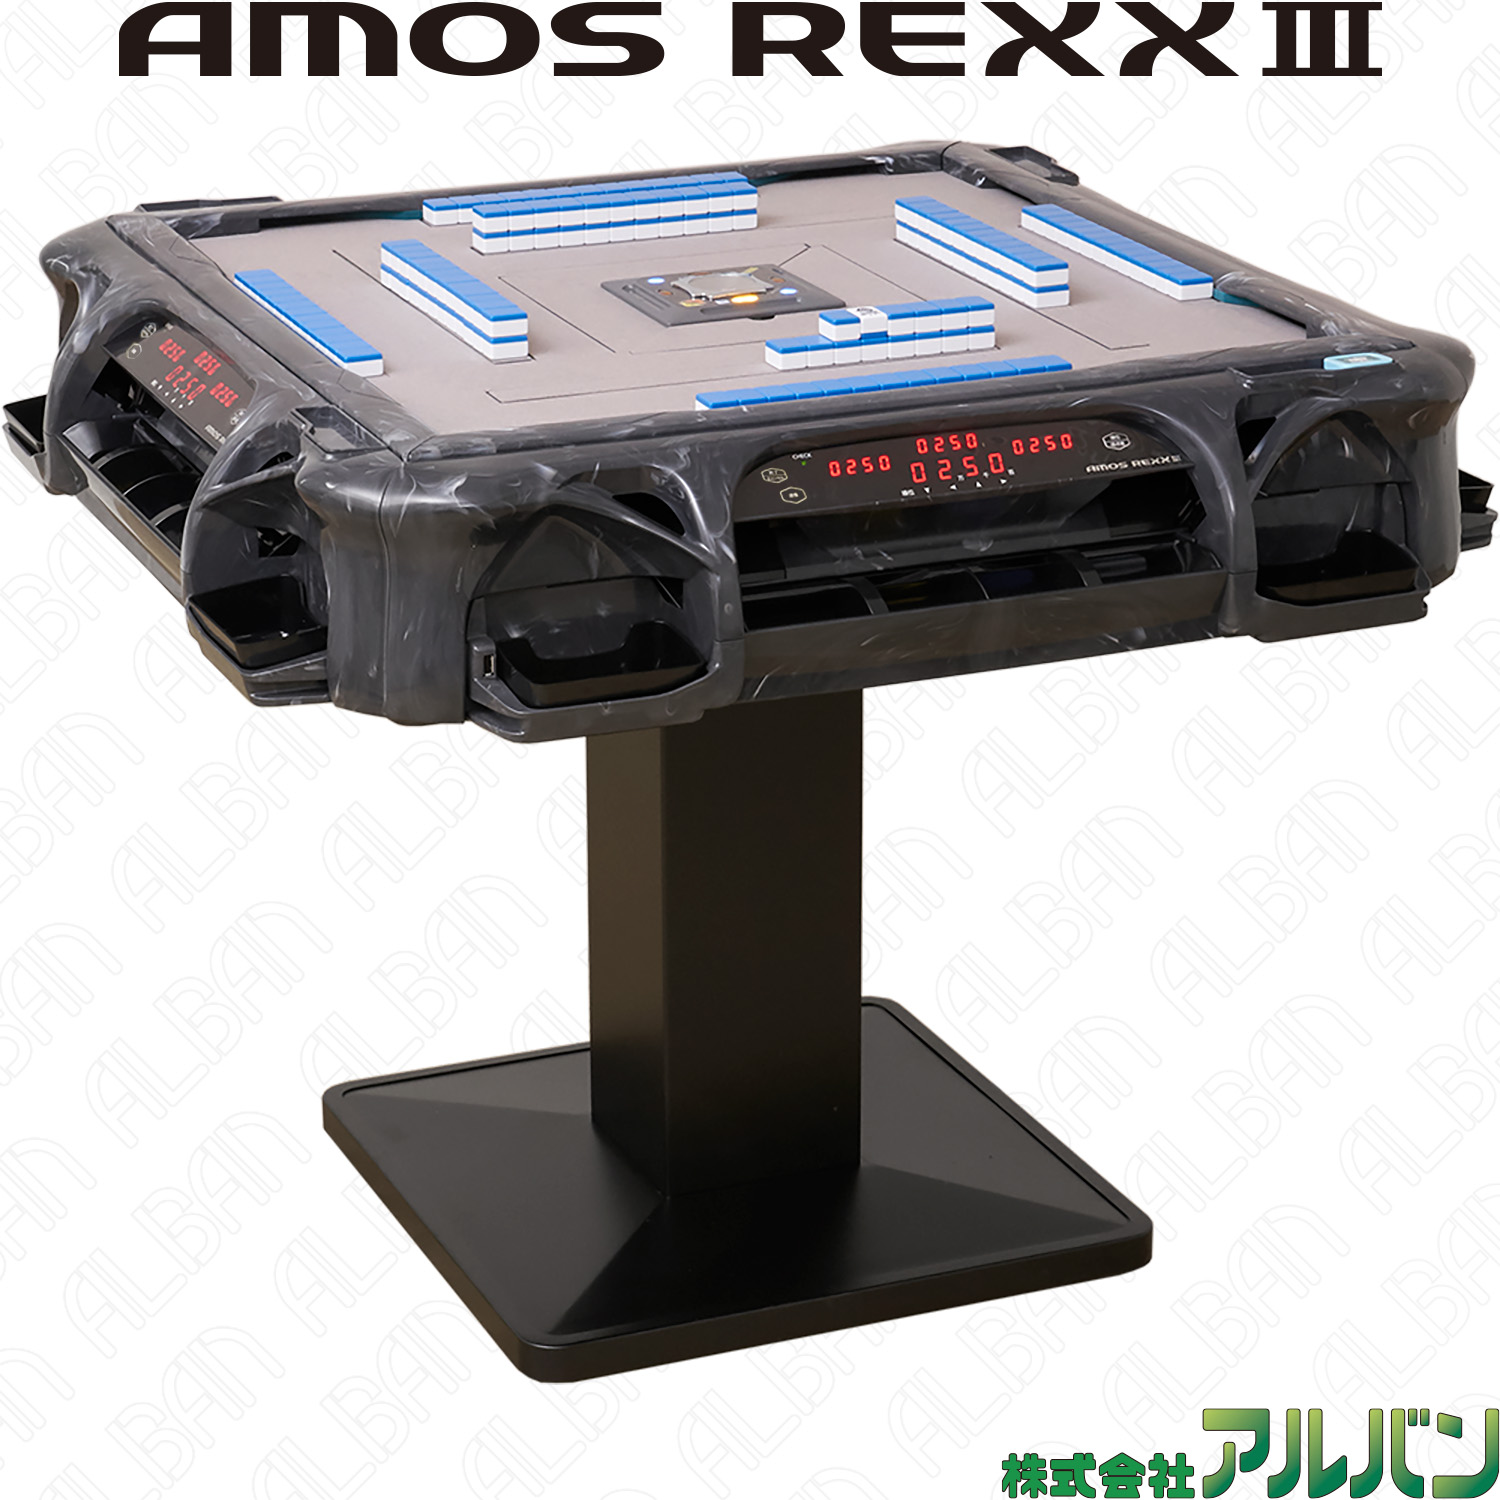 業務用全自動麻雀卓「アモスレックス3 / AMOS REXX Ⅲ」【グレー 